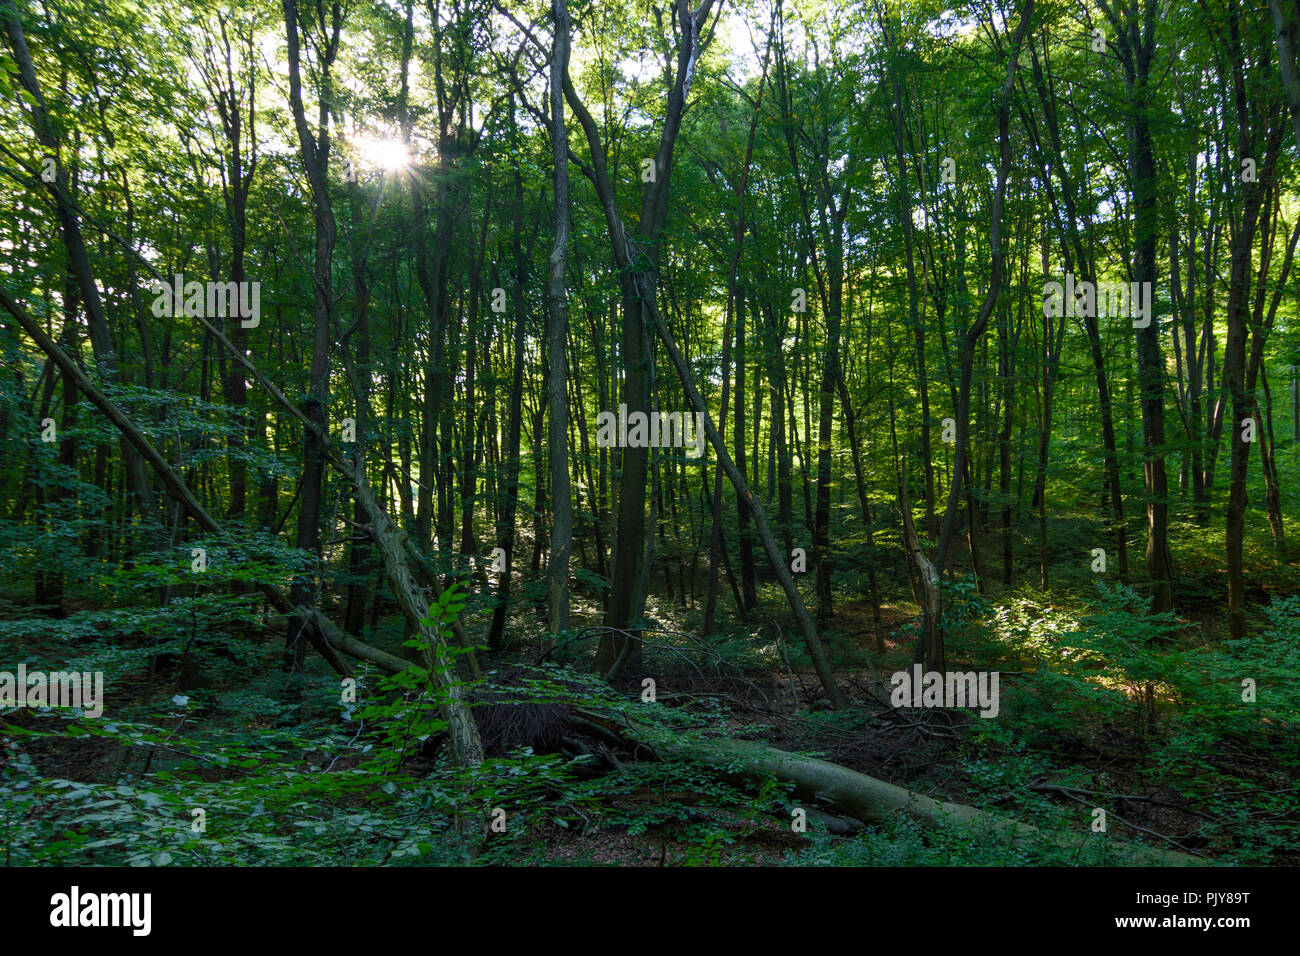 Wien, Vienne : forêt naturelle, des hêtres, des arbres tombés, réserve intégrale, 16. Ottakring, Wien, Autriche Banque D'Images